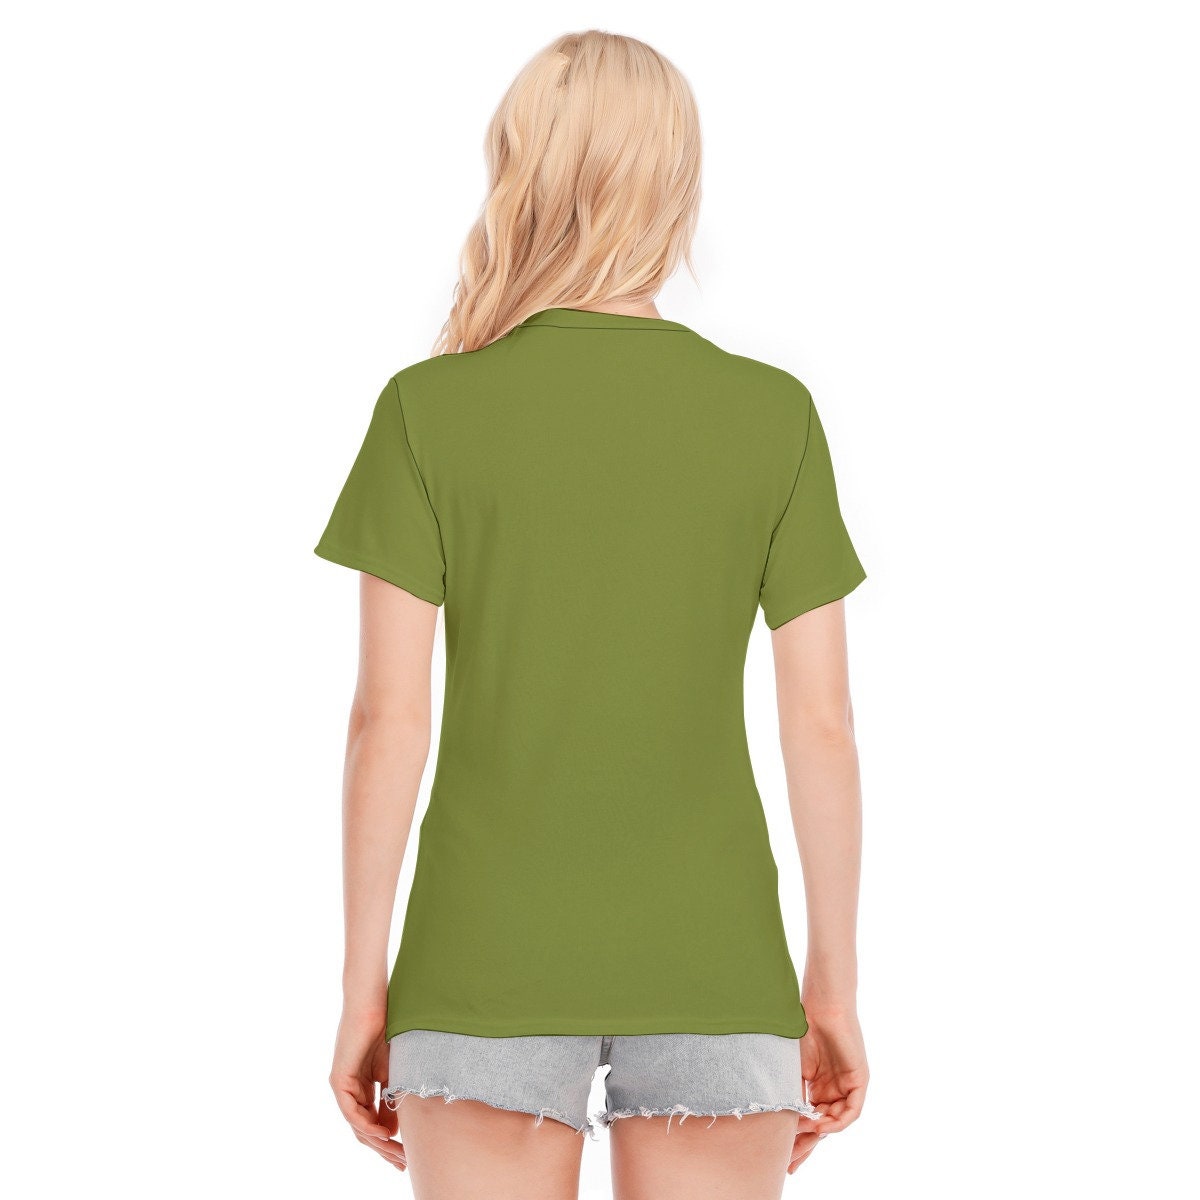 Retro-T-Shirt, T-Shirts mit Worten, Vintage-T-Shirt mit Worten, T-Shirt mit grünen Worten, Hippie-T-Shirt für Damen, T-Shirt im Vintage-Stil, olivgrünes T-Shirt